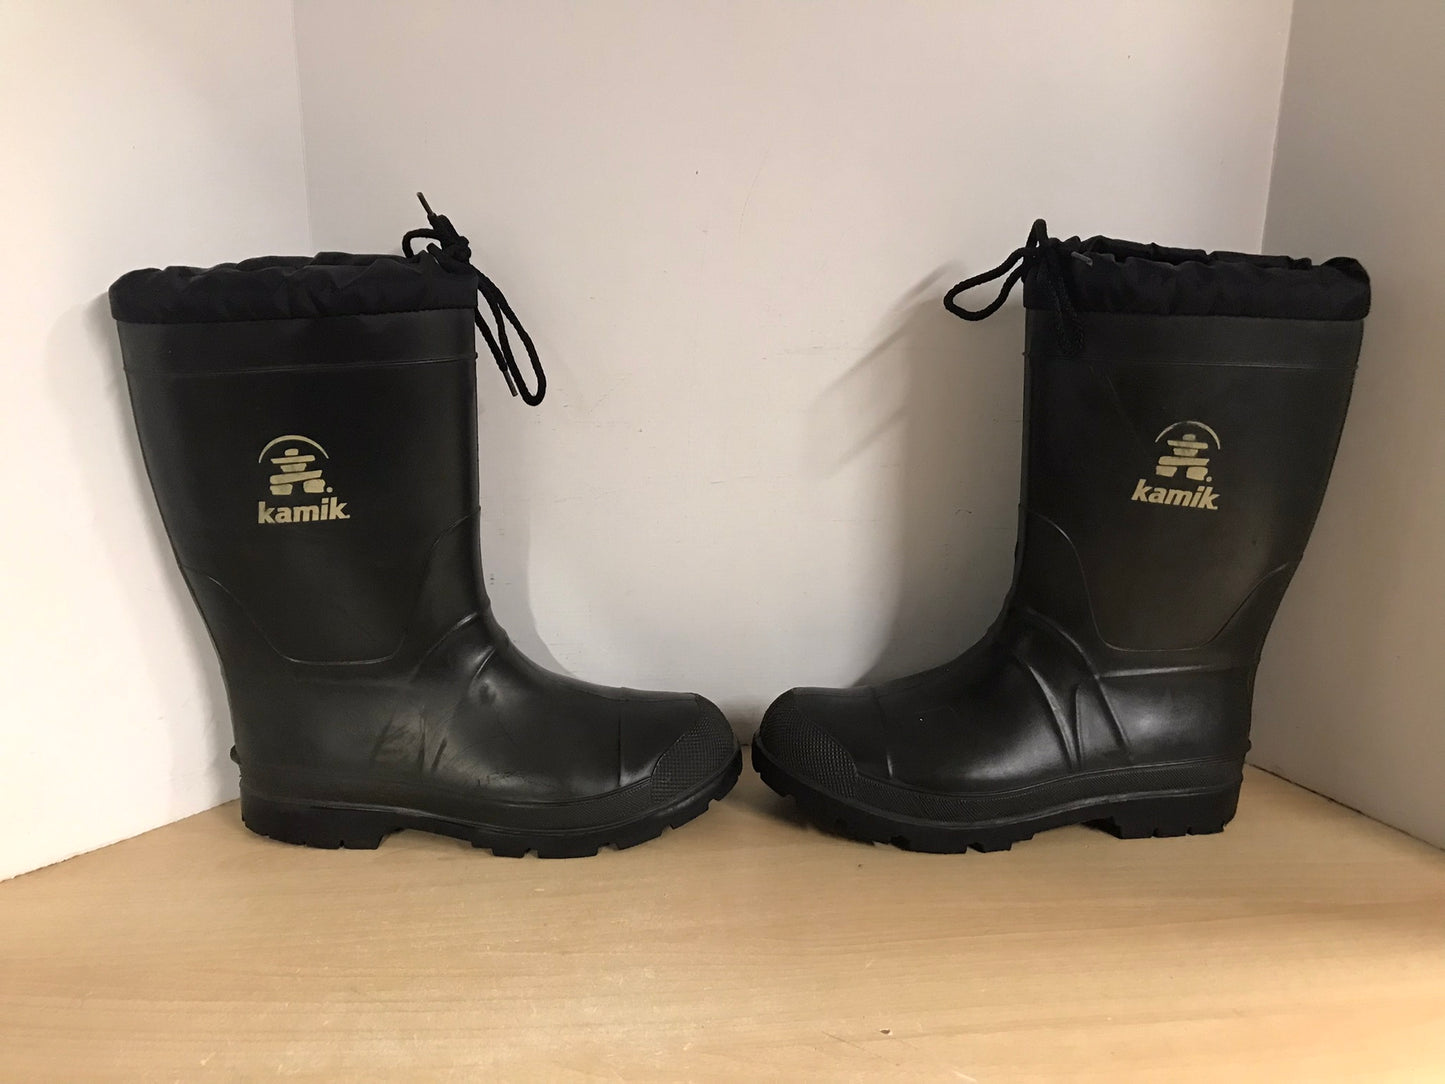 Rain Boots Men's Size 9 Kamik With Winter Felt Liner Excellent